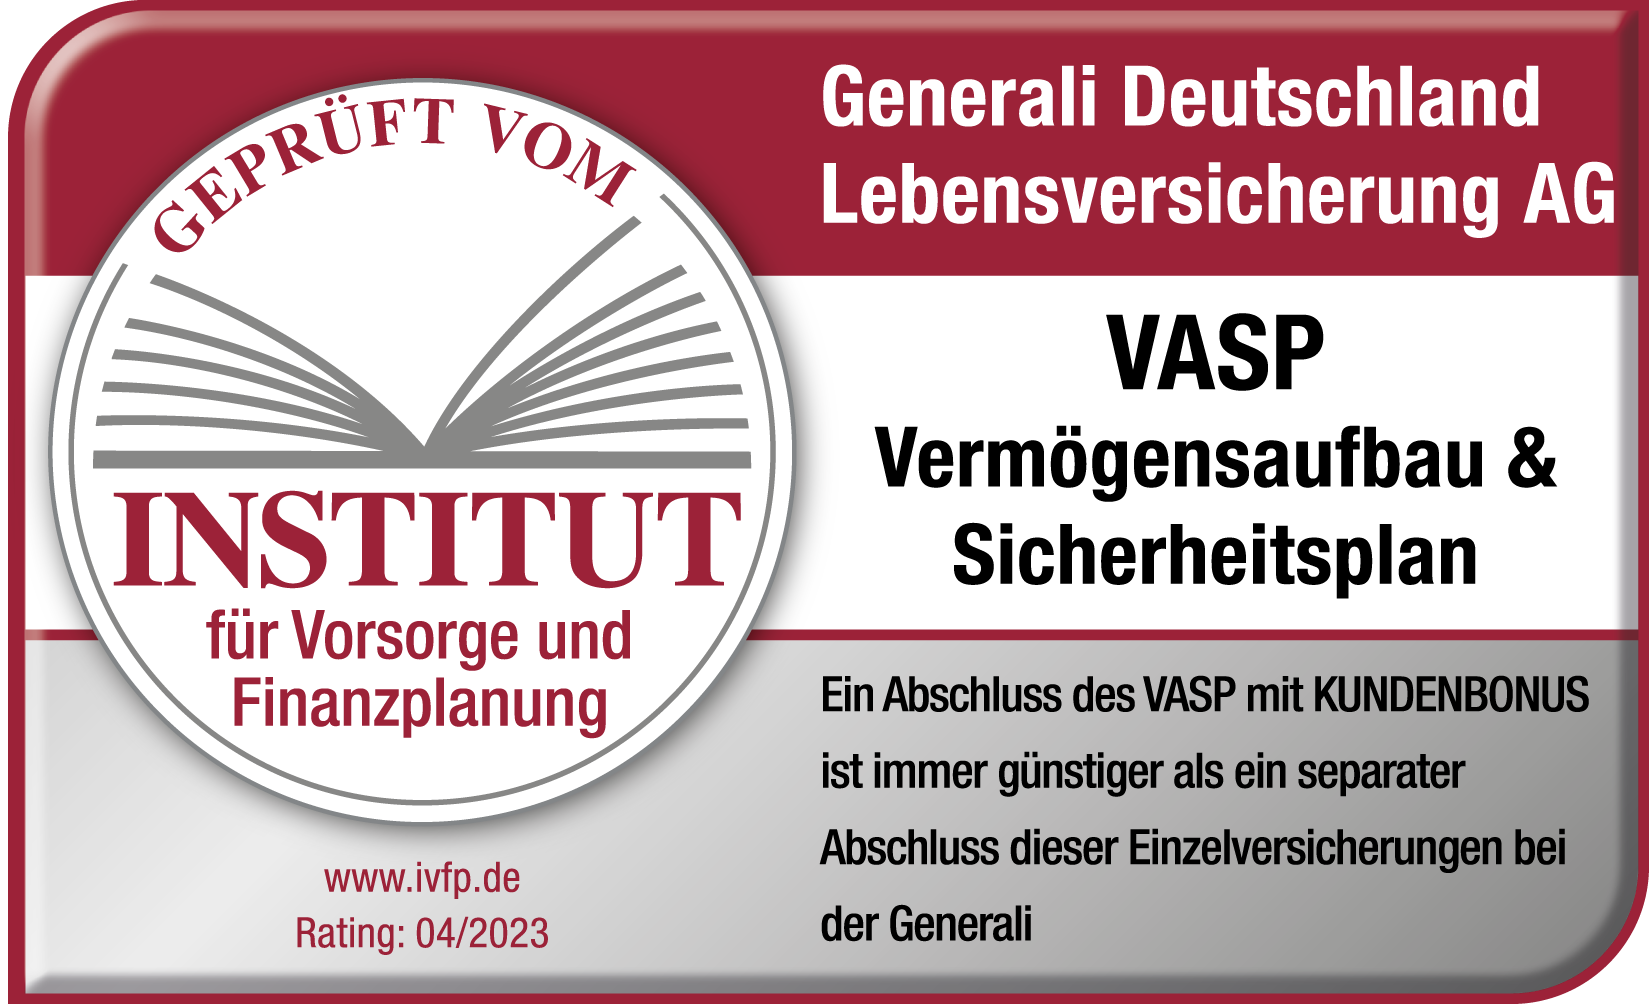 Der Generali VERMÖGENSAUFBAU & SICHERHEITSPLAN trägt das Siegel des Instituts für Vorsorge und Finanzplanung